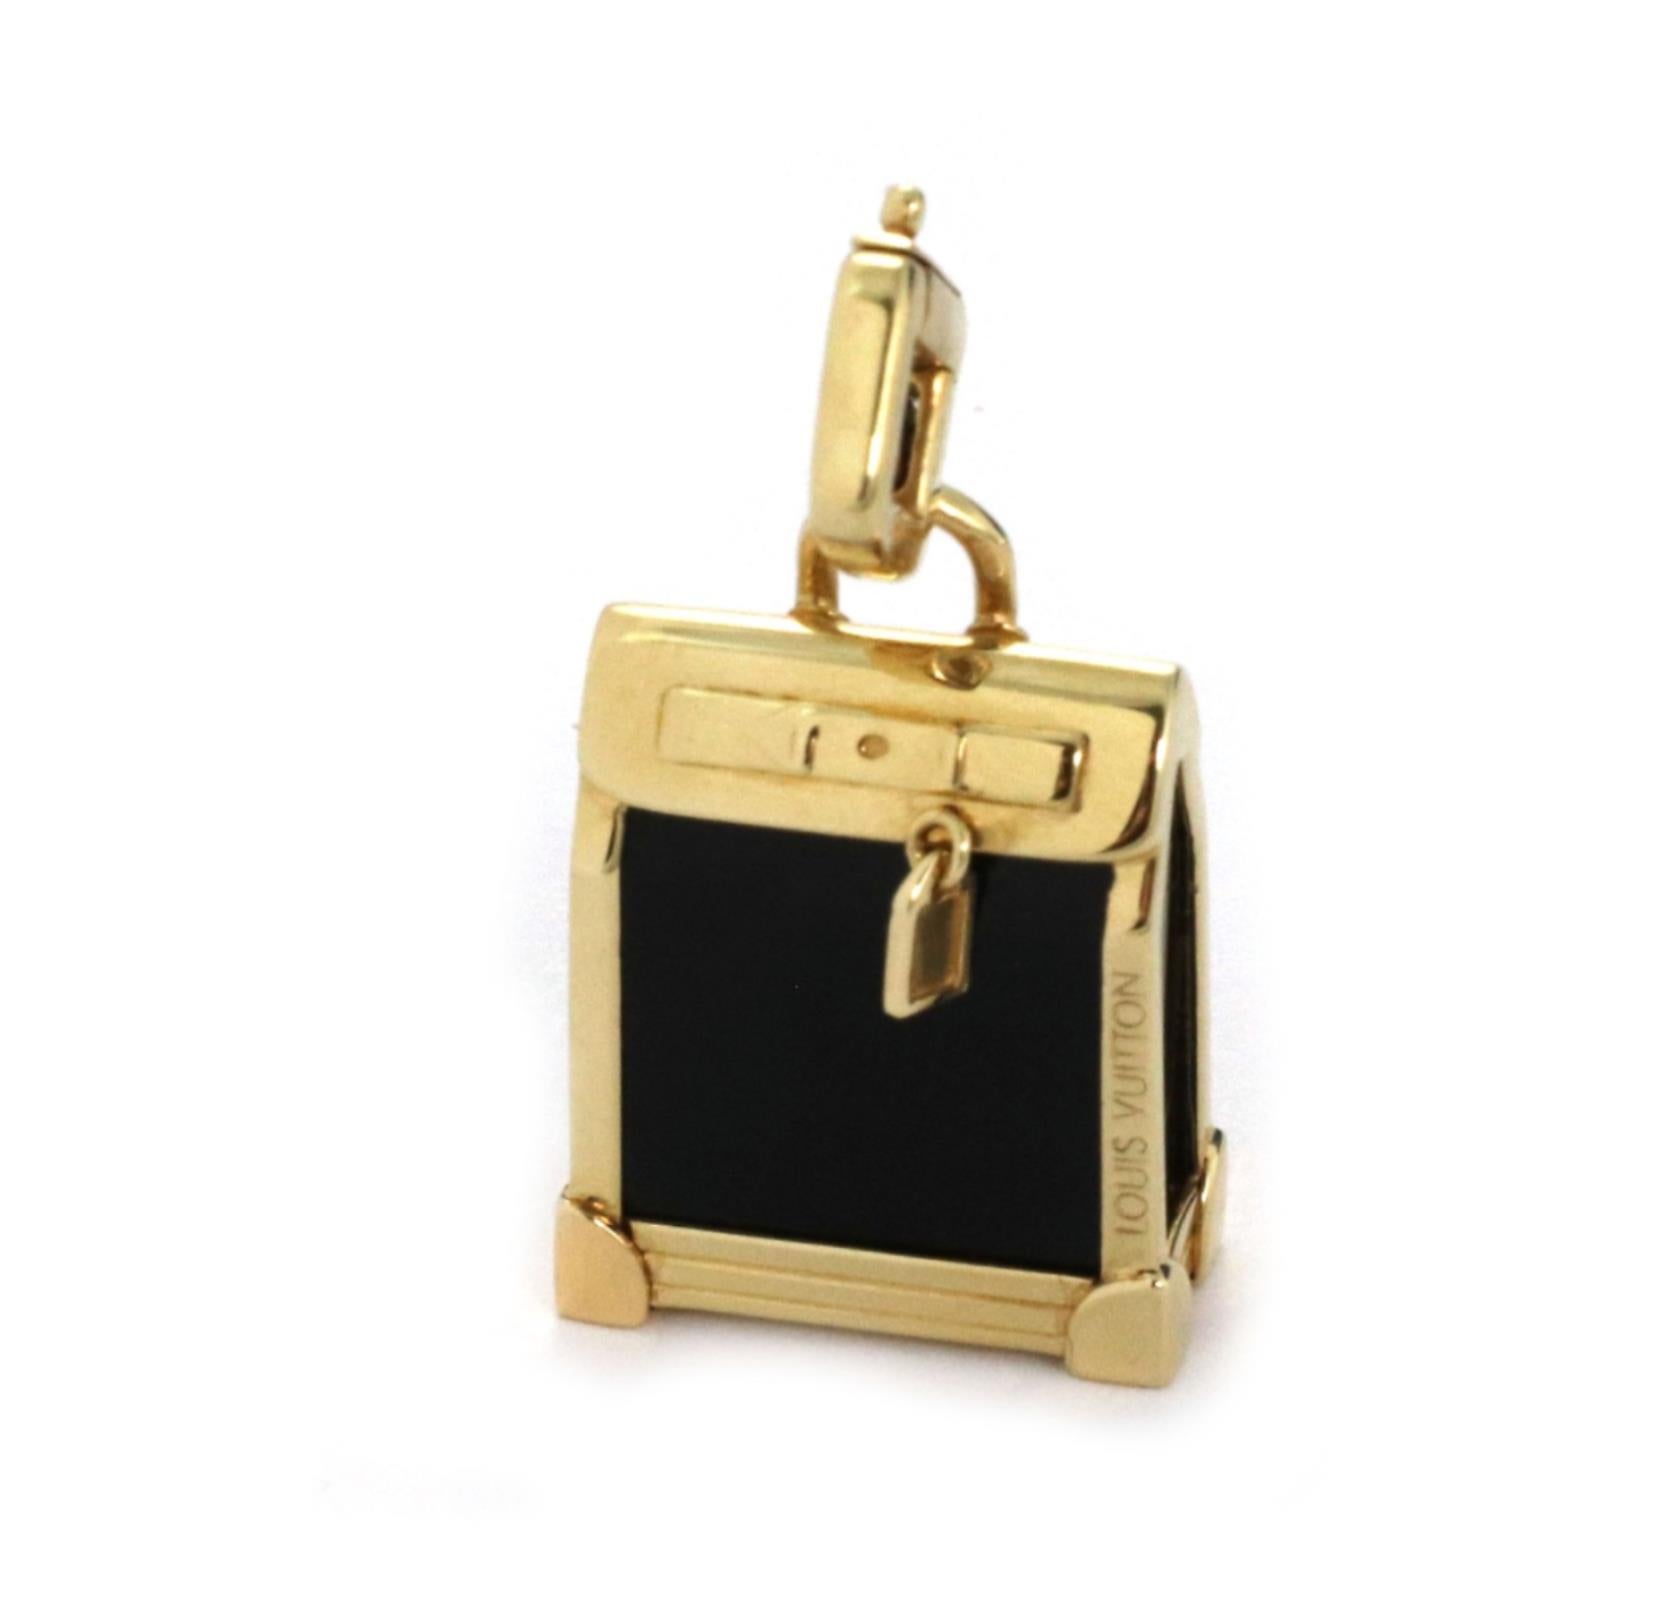 Il s'agit d'un authentique pendentif de charme Louis Vuitton de la collection Steamer. Il est fabriqué en or jaune 18k avec une finition polie. Elle est ornée d'un charme 